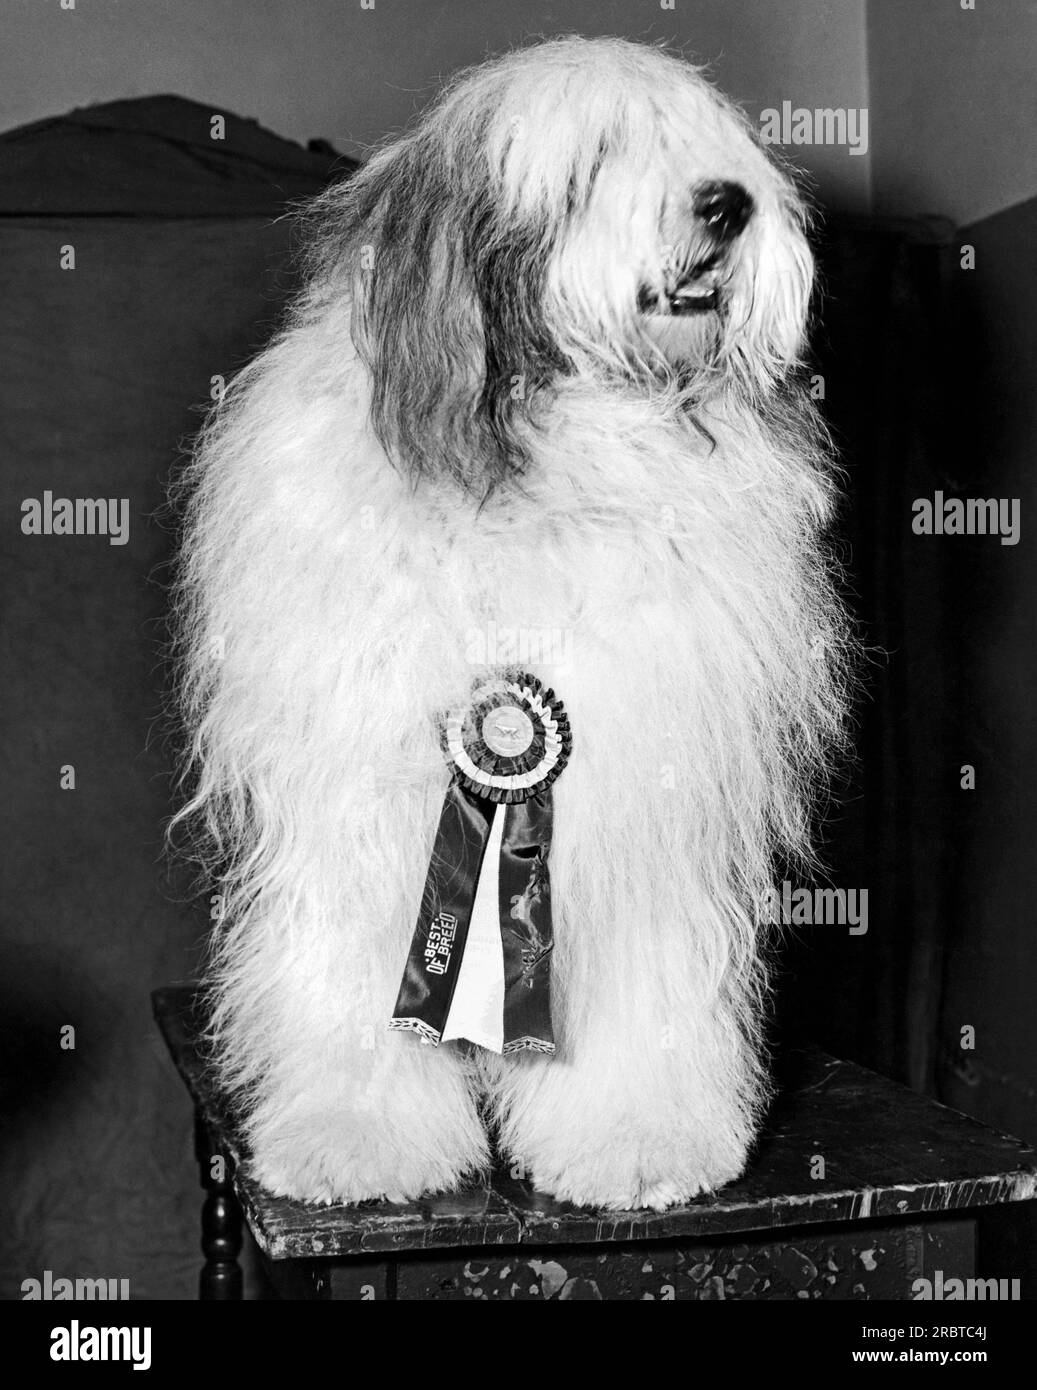 New York, New York: Februar 1947. Der Gewinner des „Best of Breed“ im Old English Schäferhund-Kurs beim Westminster Kennel Club Event im Madison Square Garden. Stockfoto